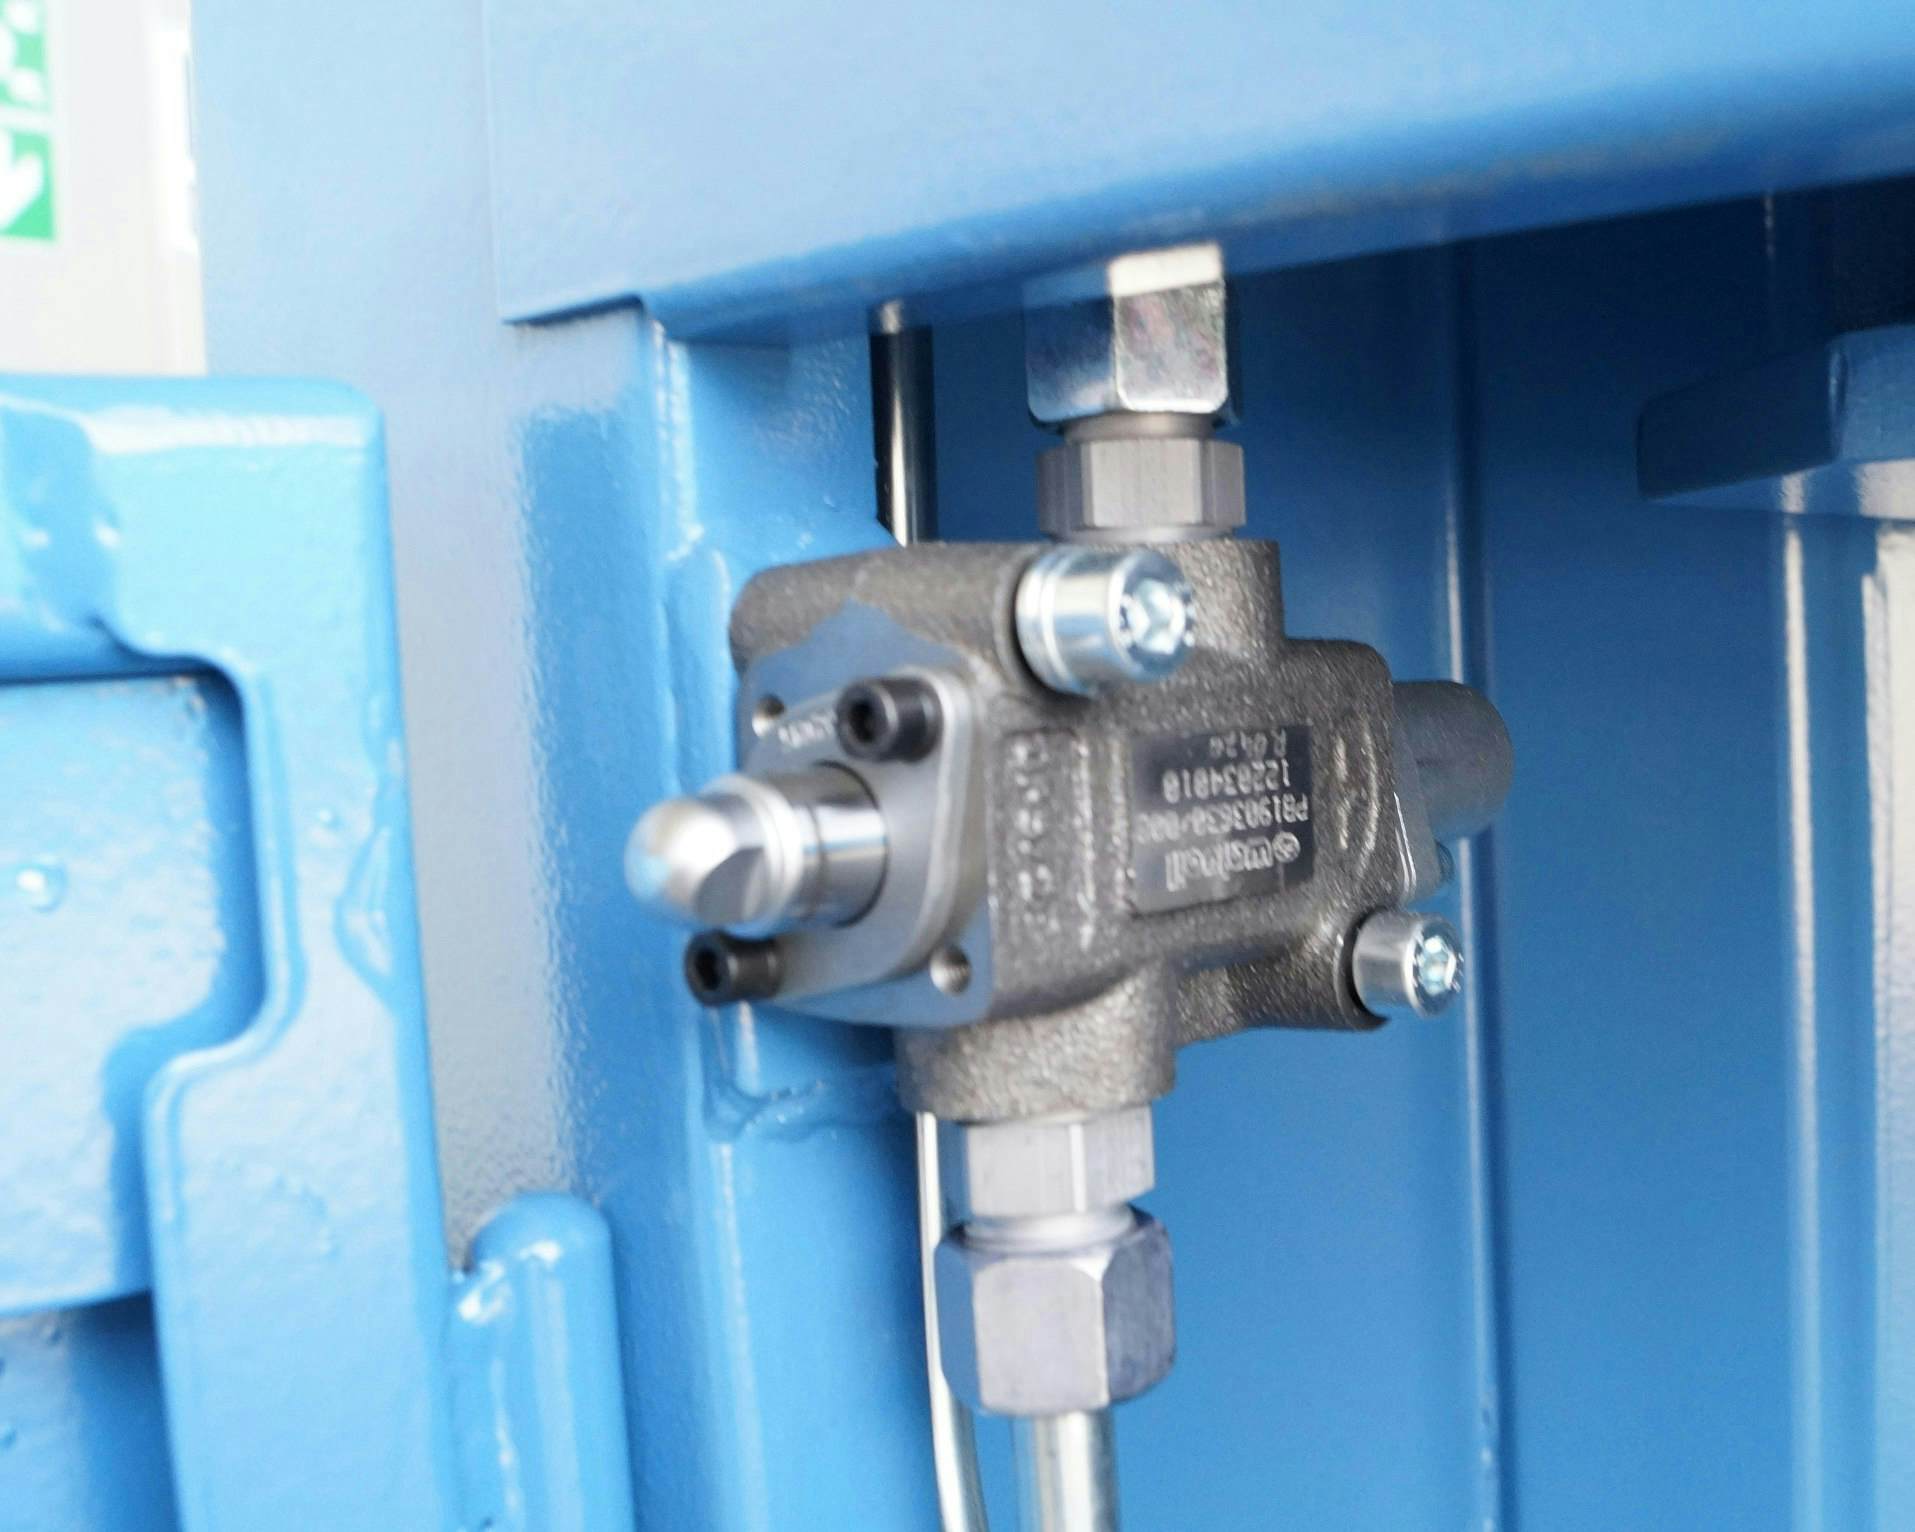 Ex-proof door safety valve barrel press